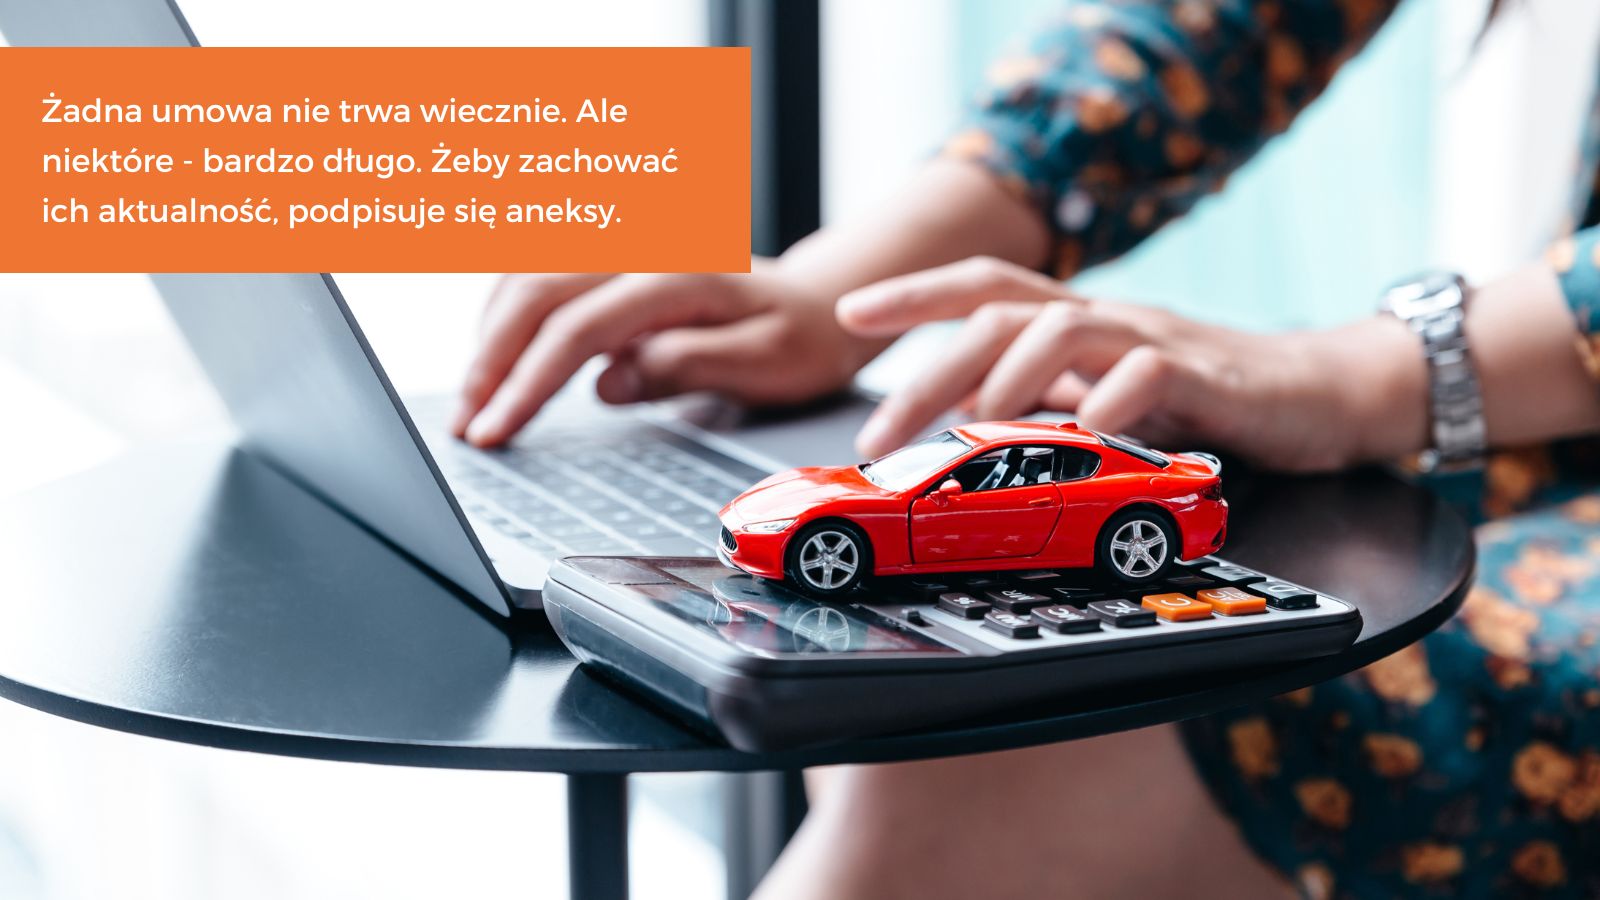 Ręce kobiety na klawiaturze laptopa, obok leży kalkulator, na którym stoi miniaturowy samochód zabawka